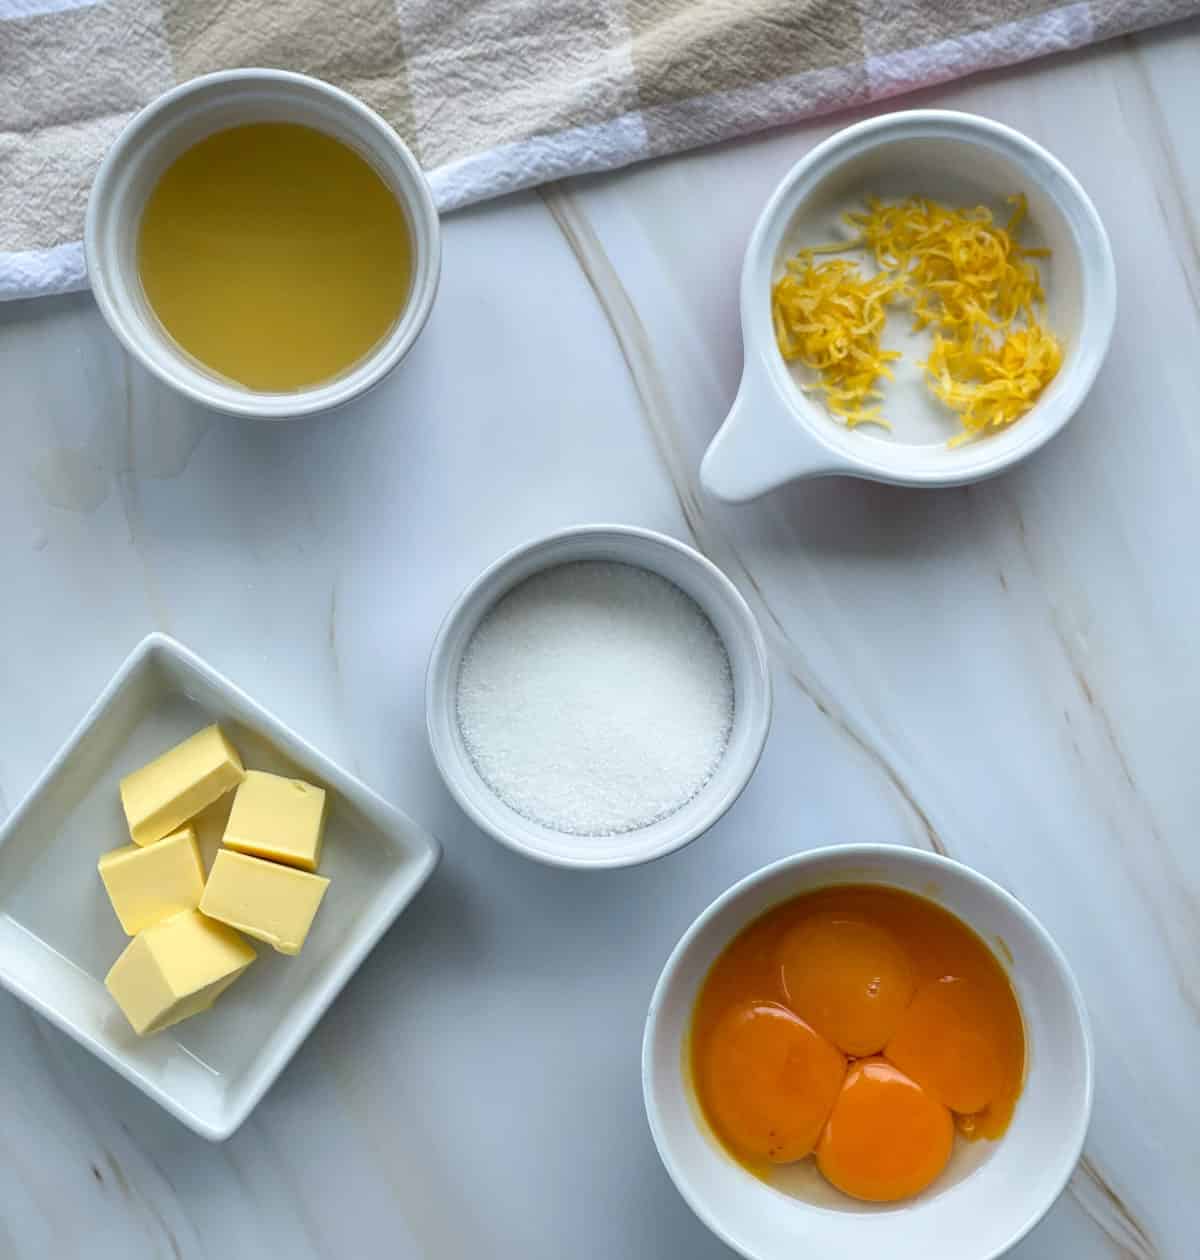 Ingredients used for lemon curd, lemon juice, lemon zest, butter, sugar and egg yolks. 